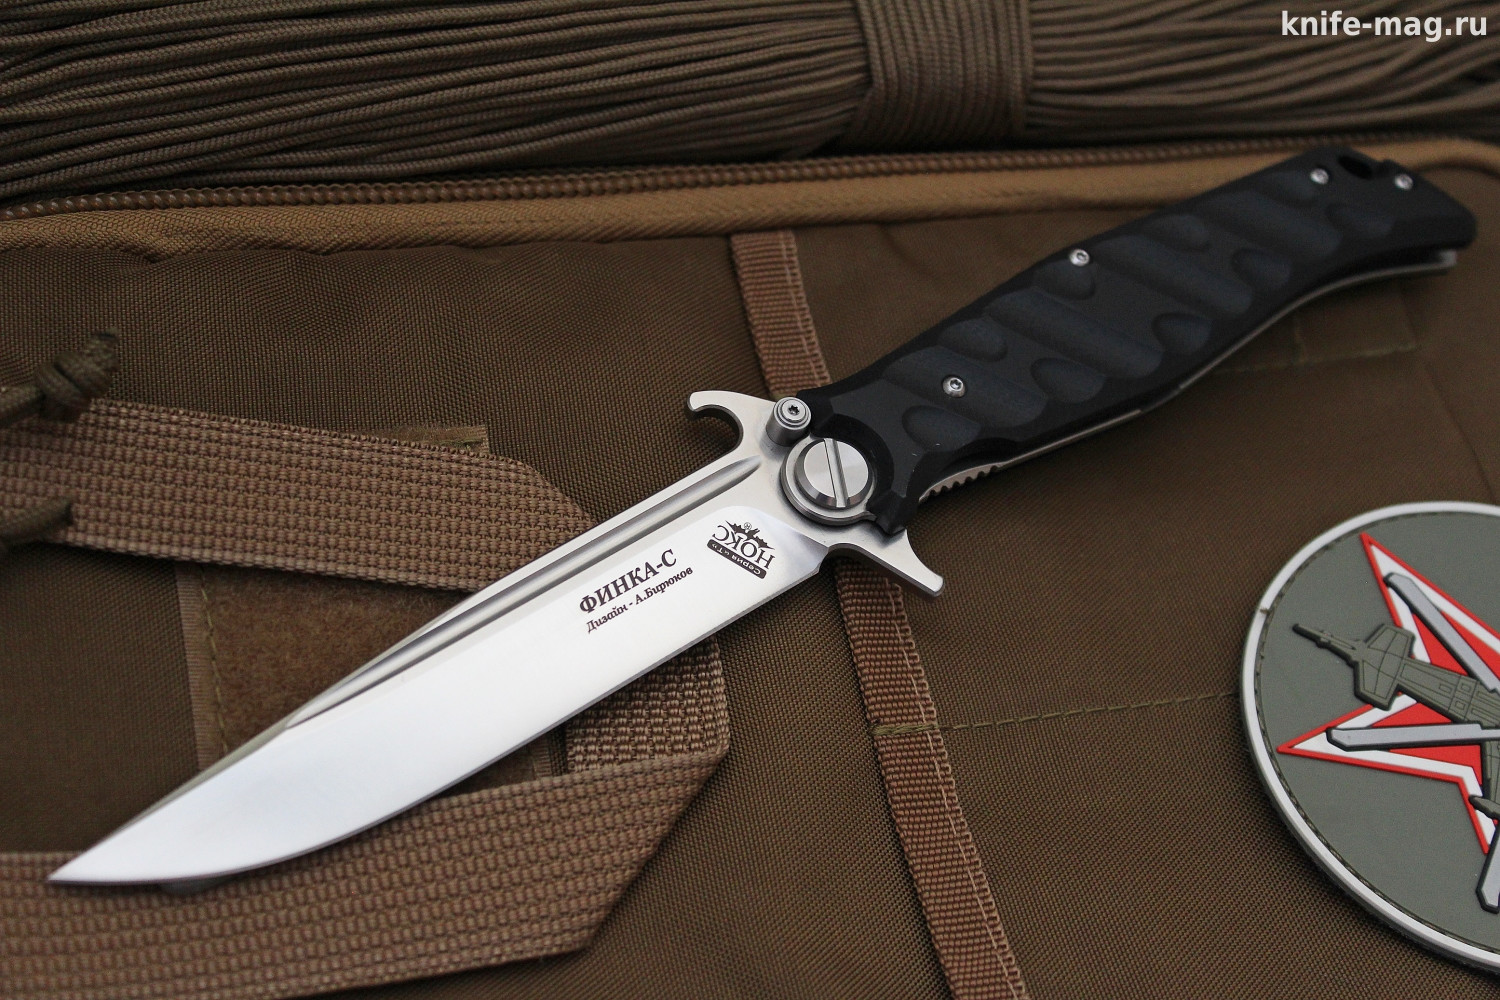 Купить нож Складной нож Финка С (на подшипниках) | KNIFE-MAG.RU